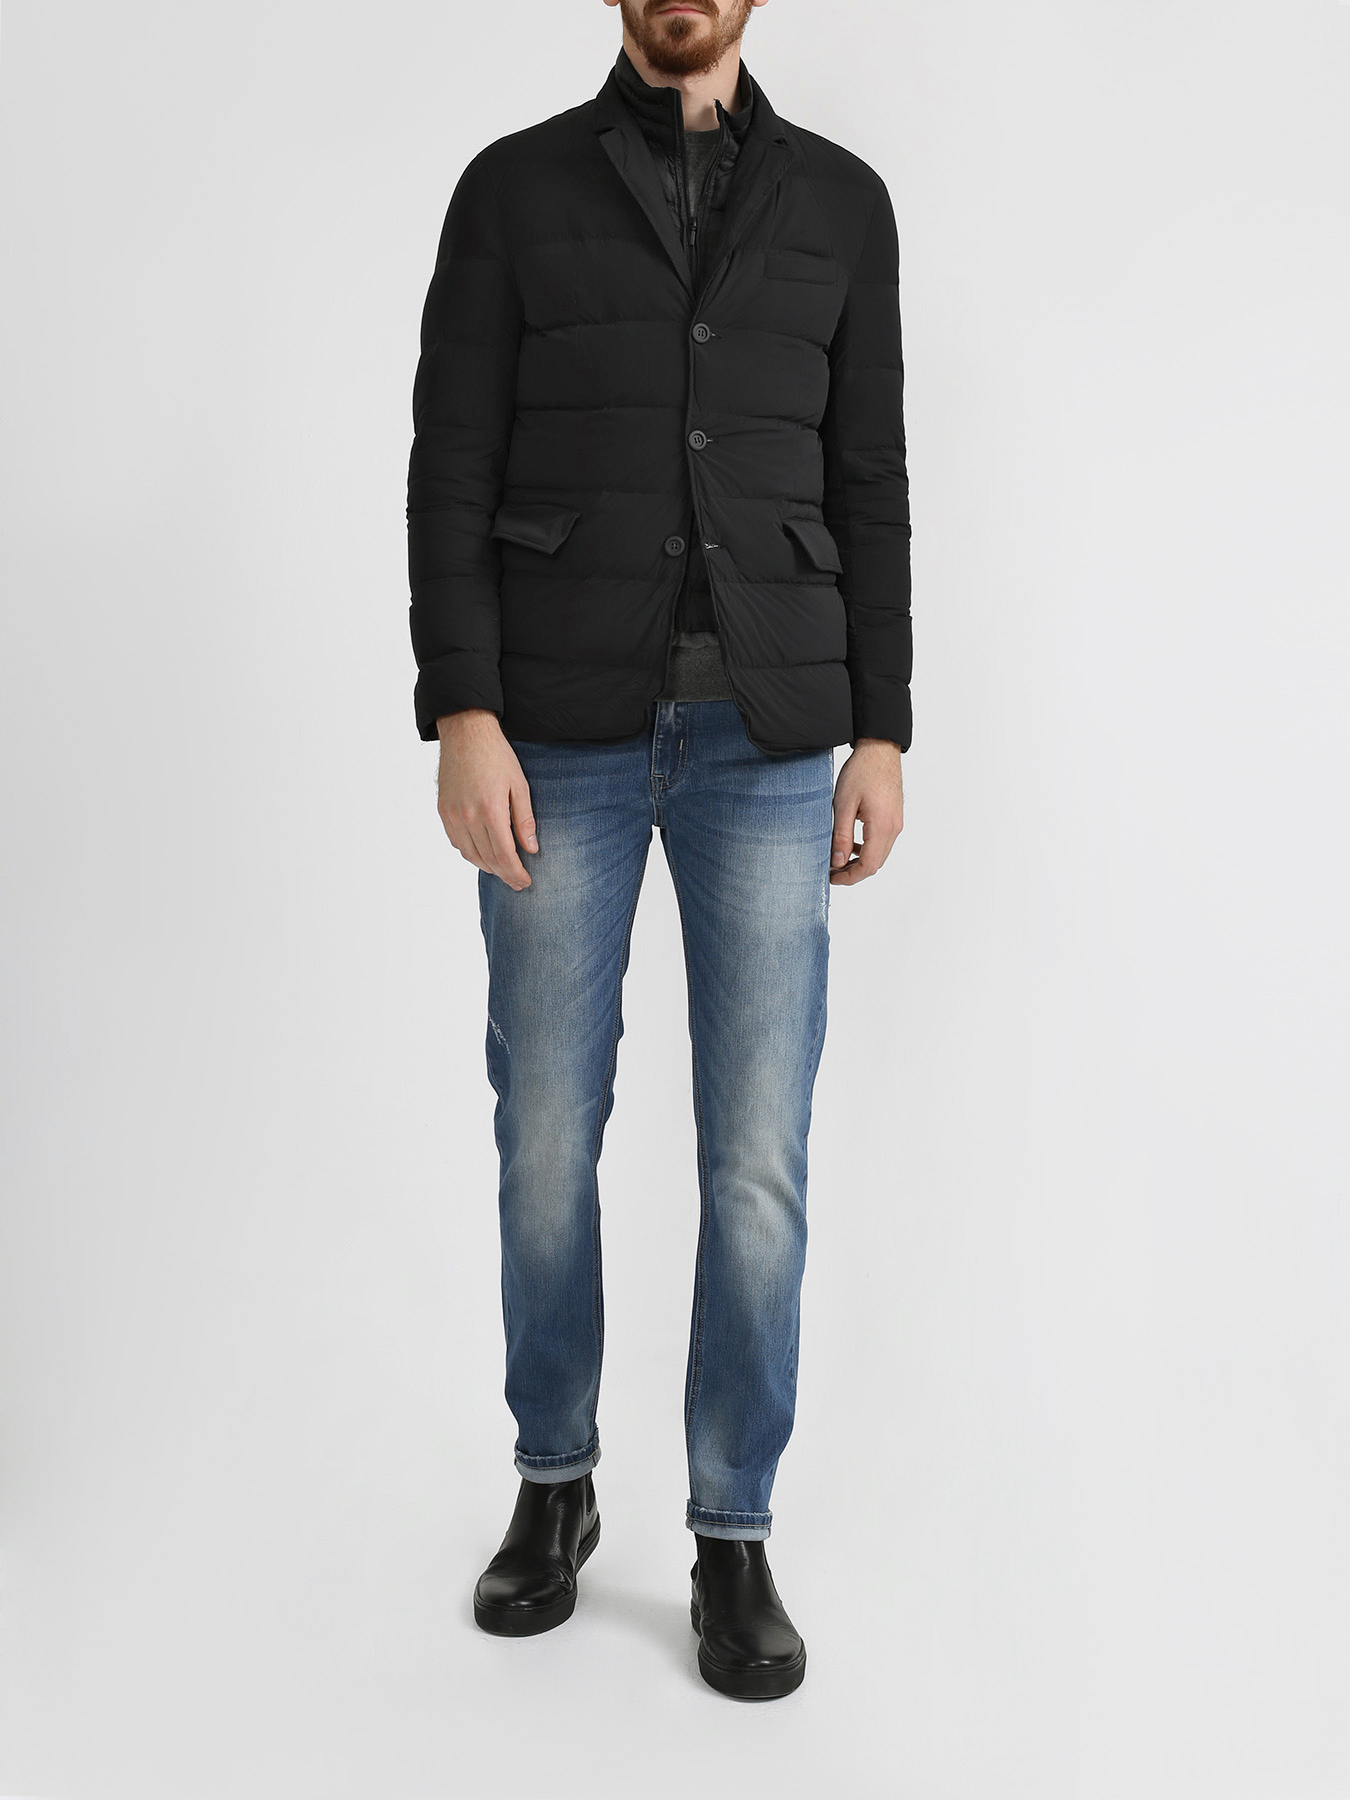 Alessandro Manzoni Jeans Куртка 316266-029